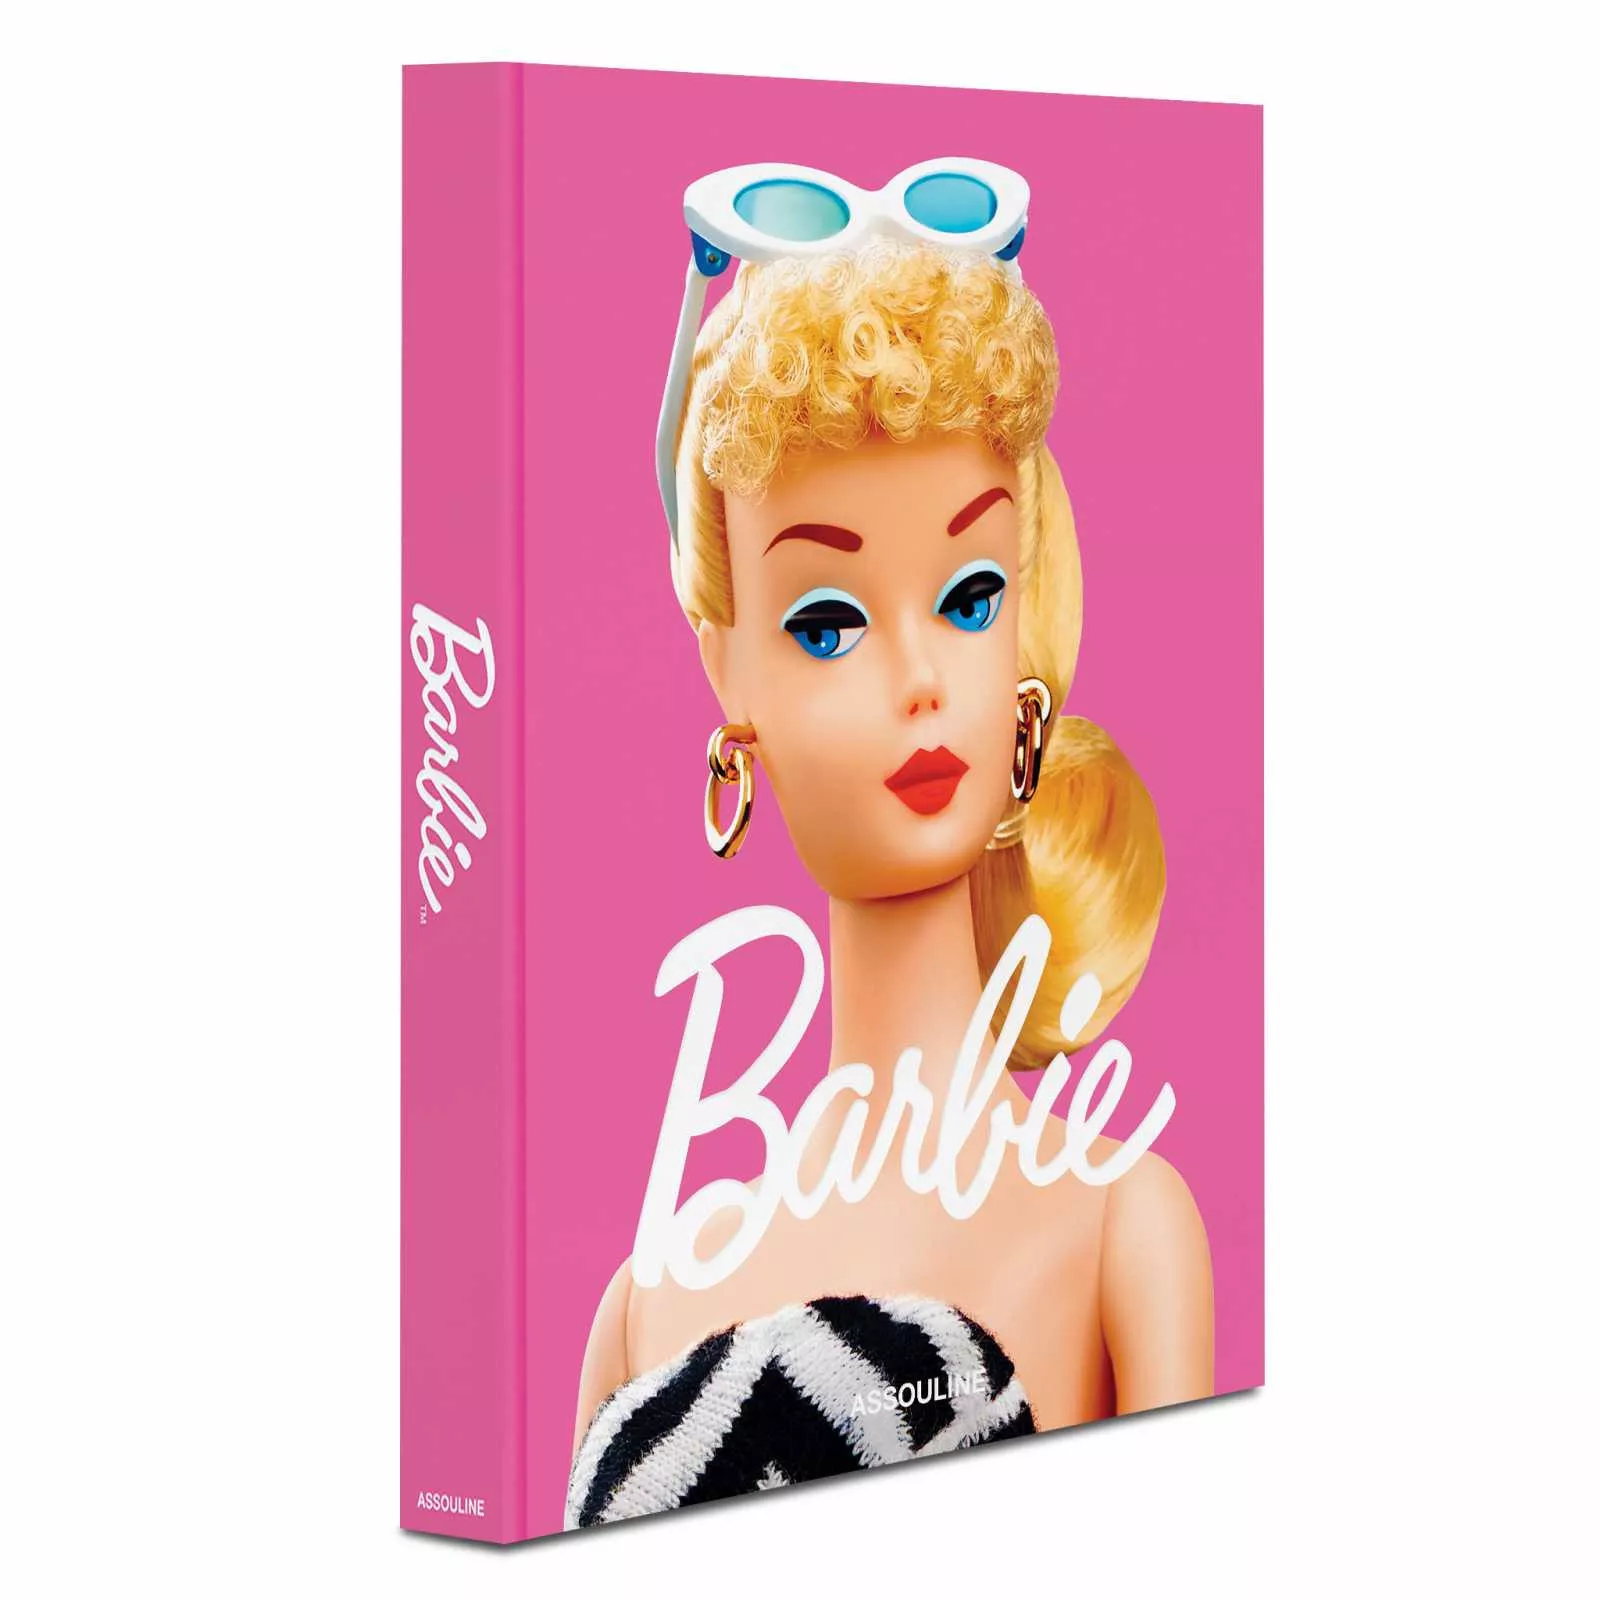 Книга "Barbie" Assouline Classics Collection (9781649803214) - Фото nav 2